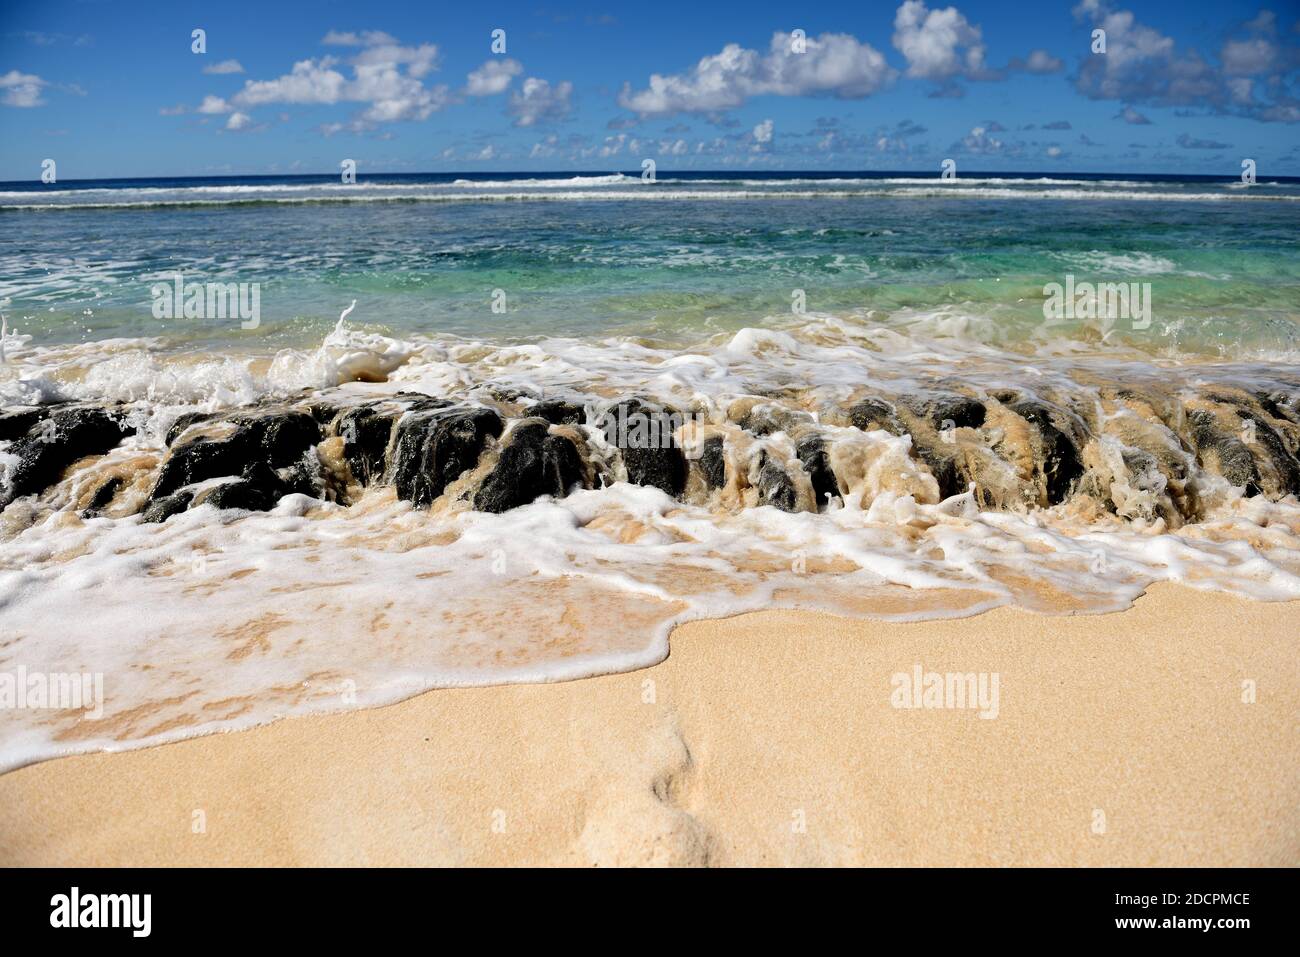 Des vagues de l'océan débordent sur les rochers de récif de lave, la plage de sable, la mer bleue, le ciel et les nuages à Guam, en Micronésie Banque D'Images